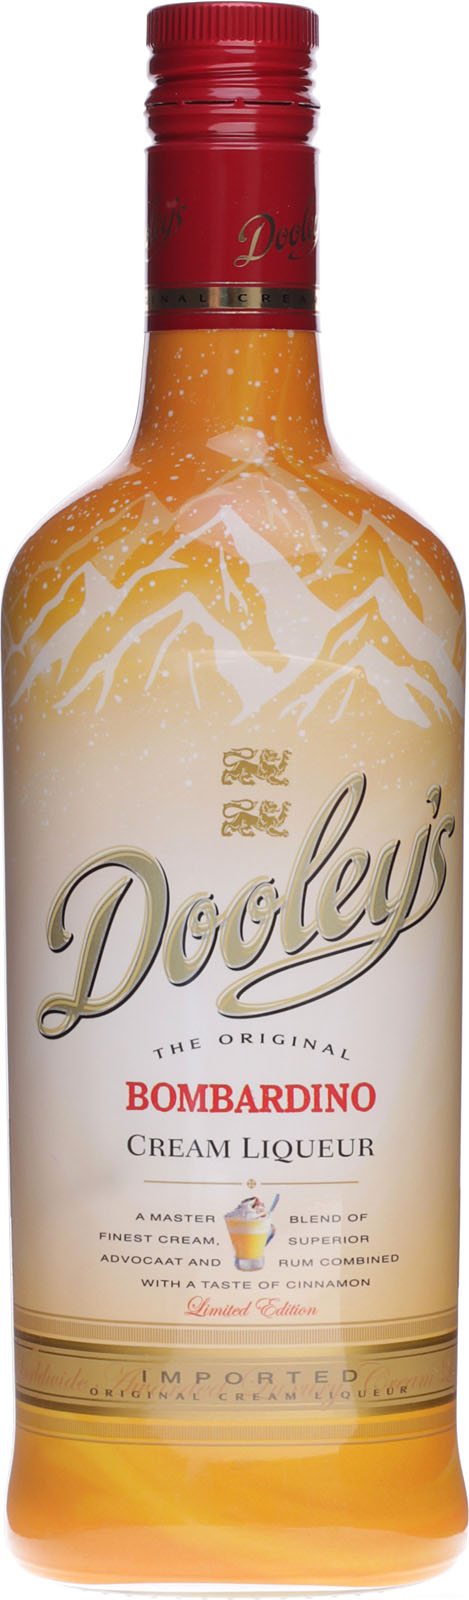 Dooleys Bombardino Cream Liqueur günstig schnell und be